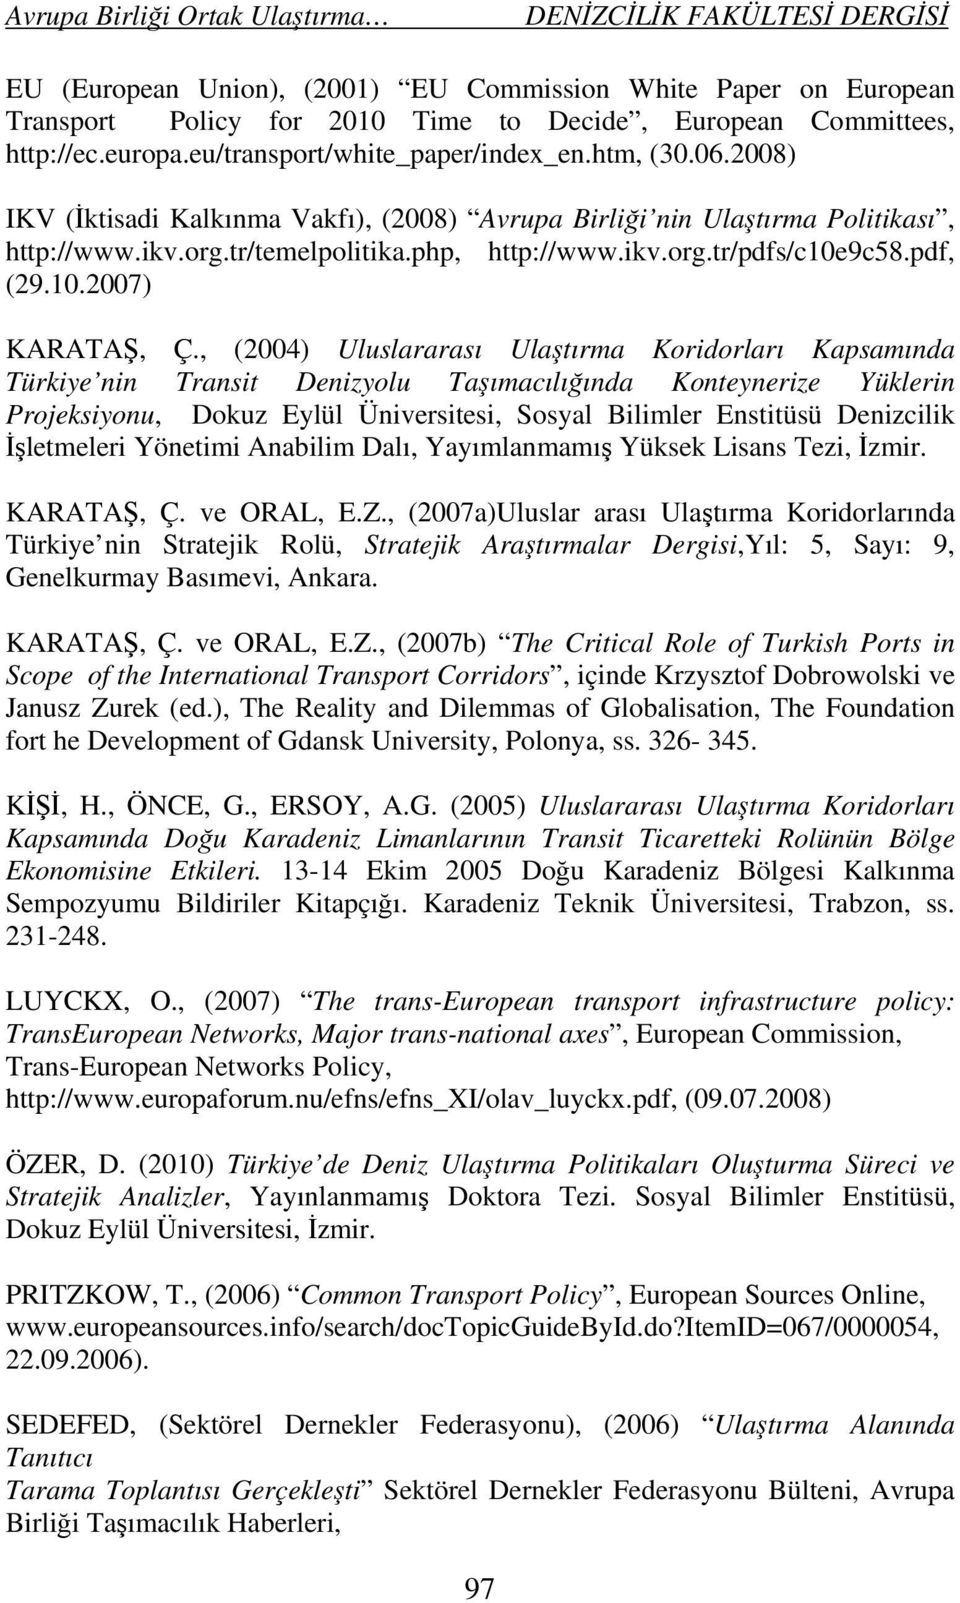 , (2004) Uluslararası Ulaştırma Koridorları Kapsamında Türkiye nin Transit Denizyolu Taşımacılığında Konteynerize Yüklerin Projeksiyonu, Dokuz Eylül Üniversitesi, Sosyal Bilimler Enstitüsü Denizcilik